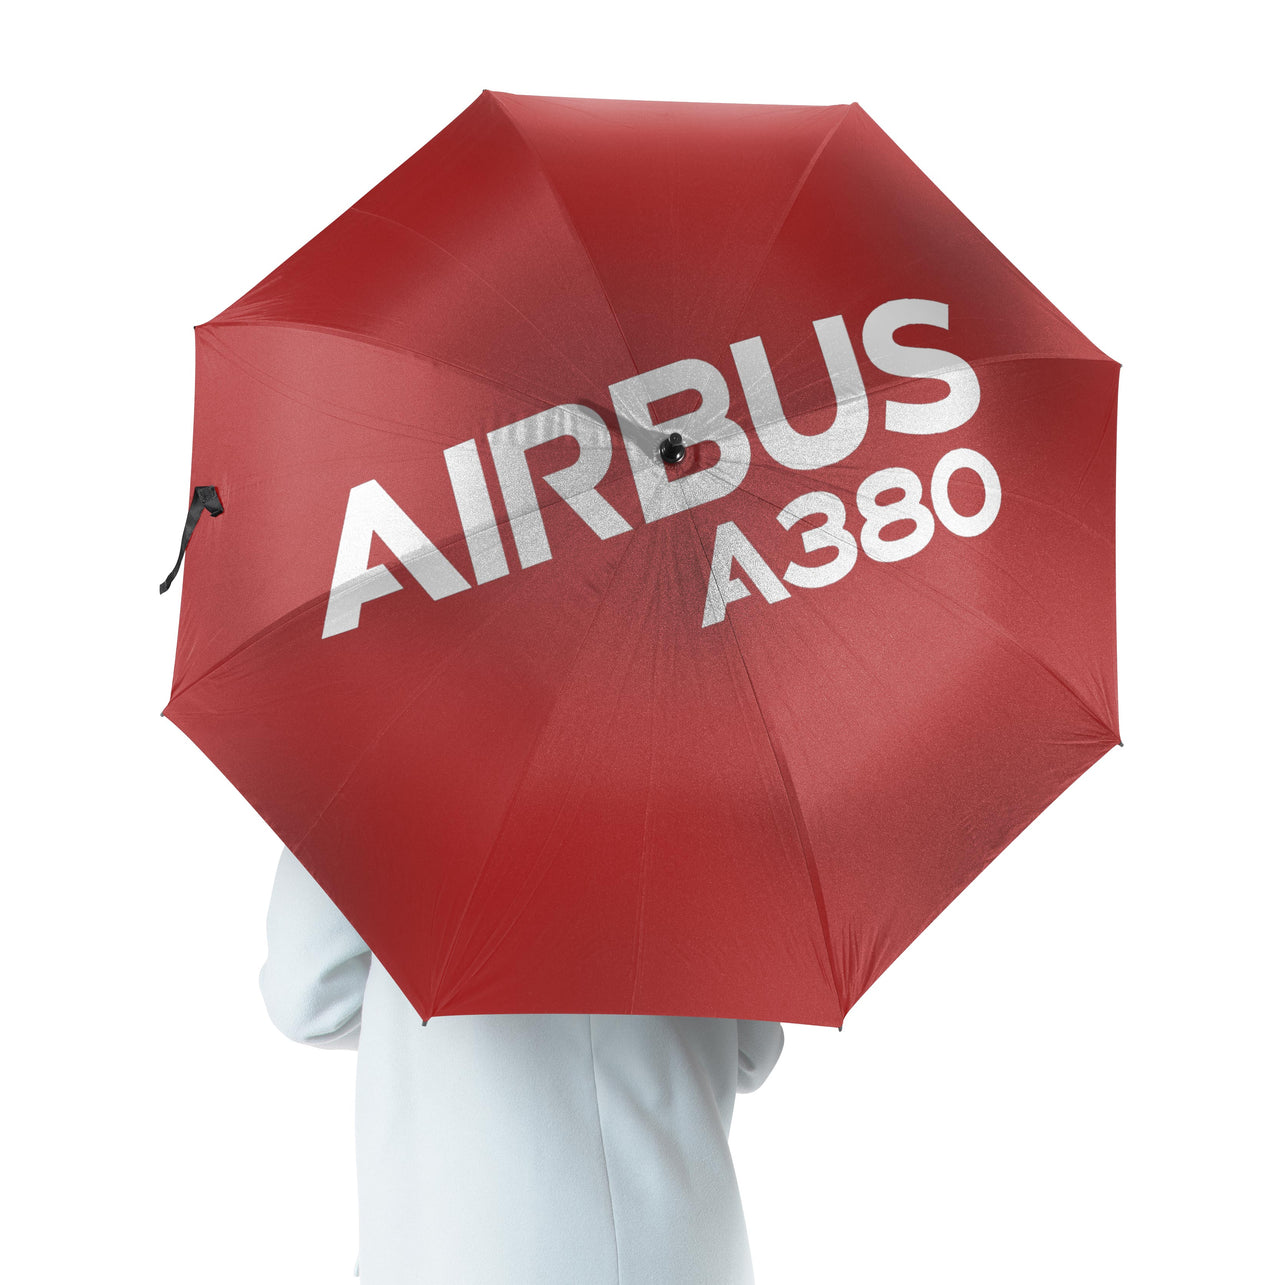 Airbus A380 & Text Designed Umbrella